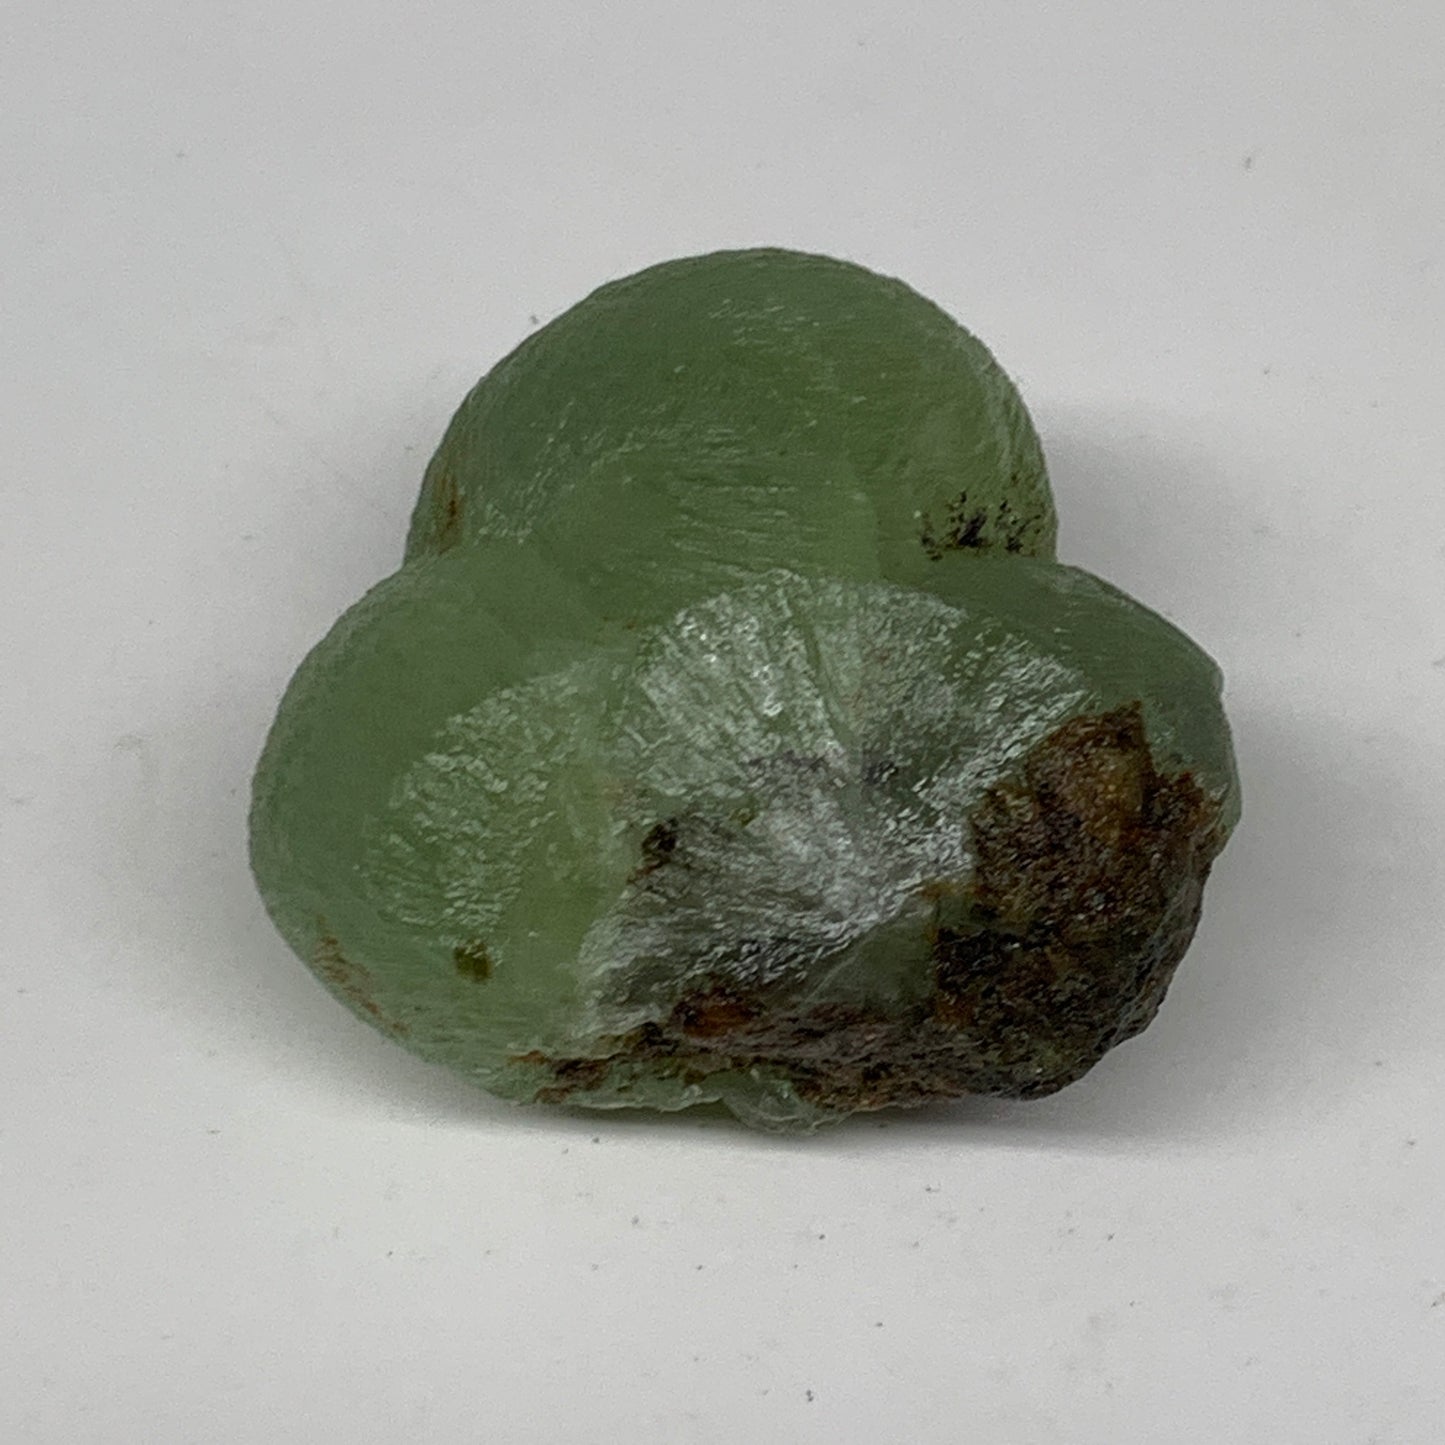 67.9g, 1.6"x1.7"x1.1" Prehnite With Epidote Inclusion Mineral Specimen, B7014